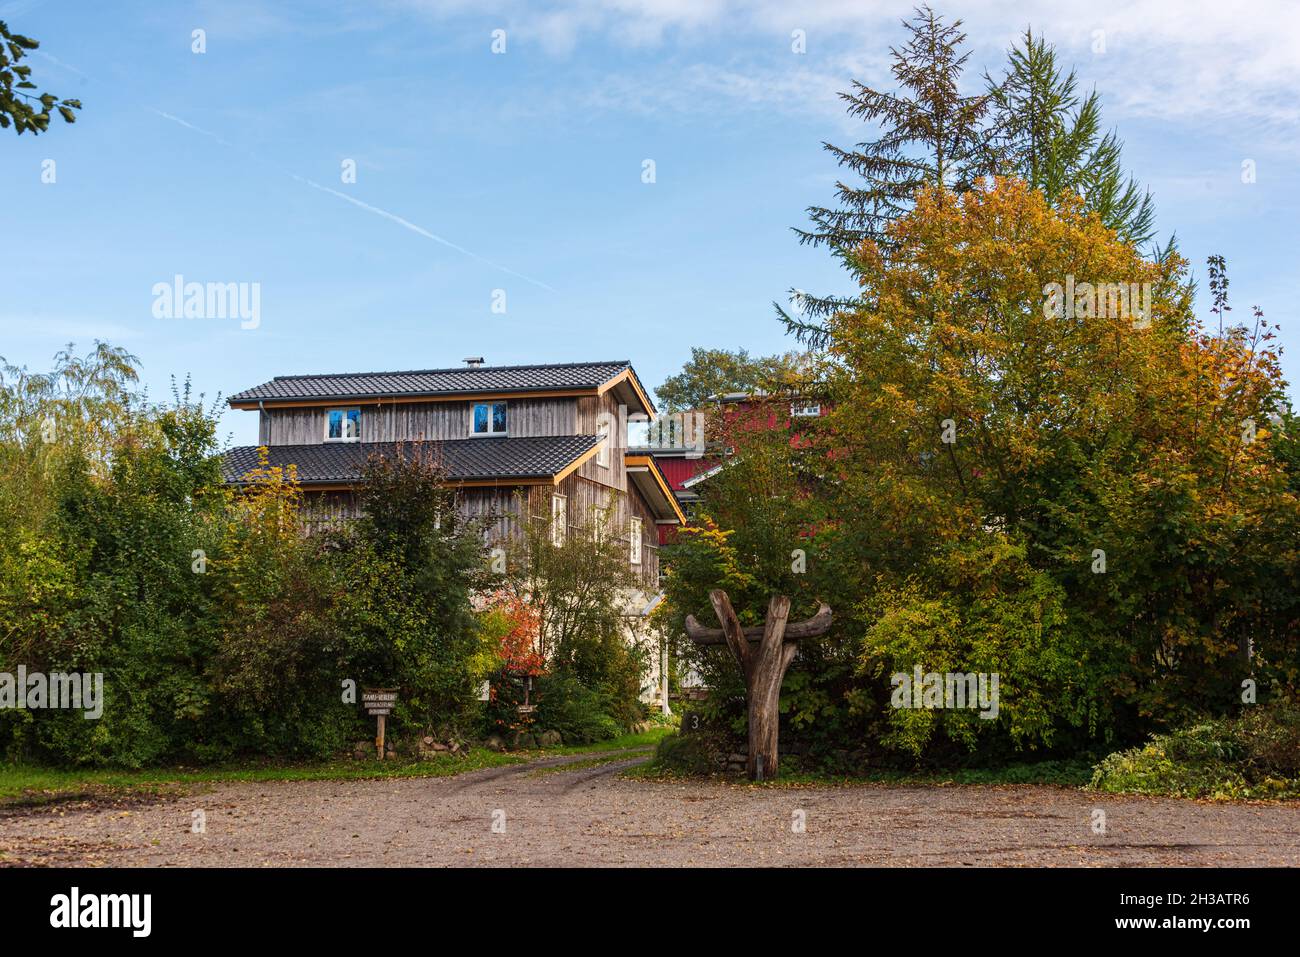 Hölzernes Wohnhaus mit Kanuverleih an der Eider en Schleswig-Holstein Foto de stock